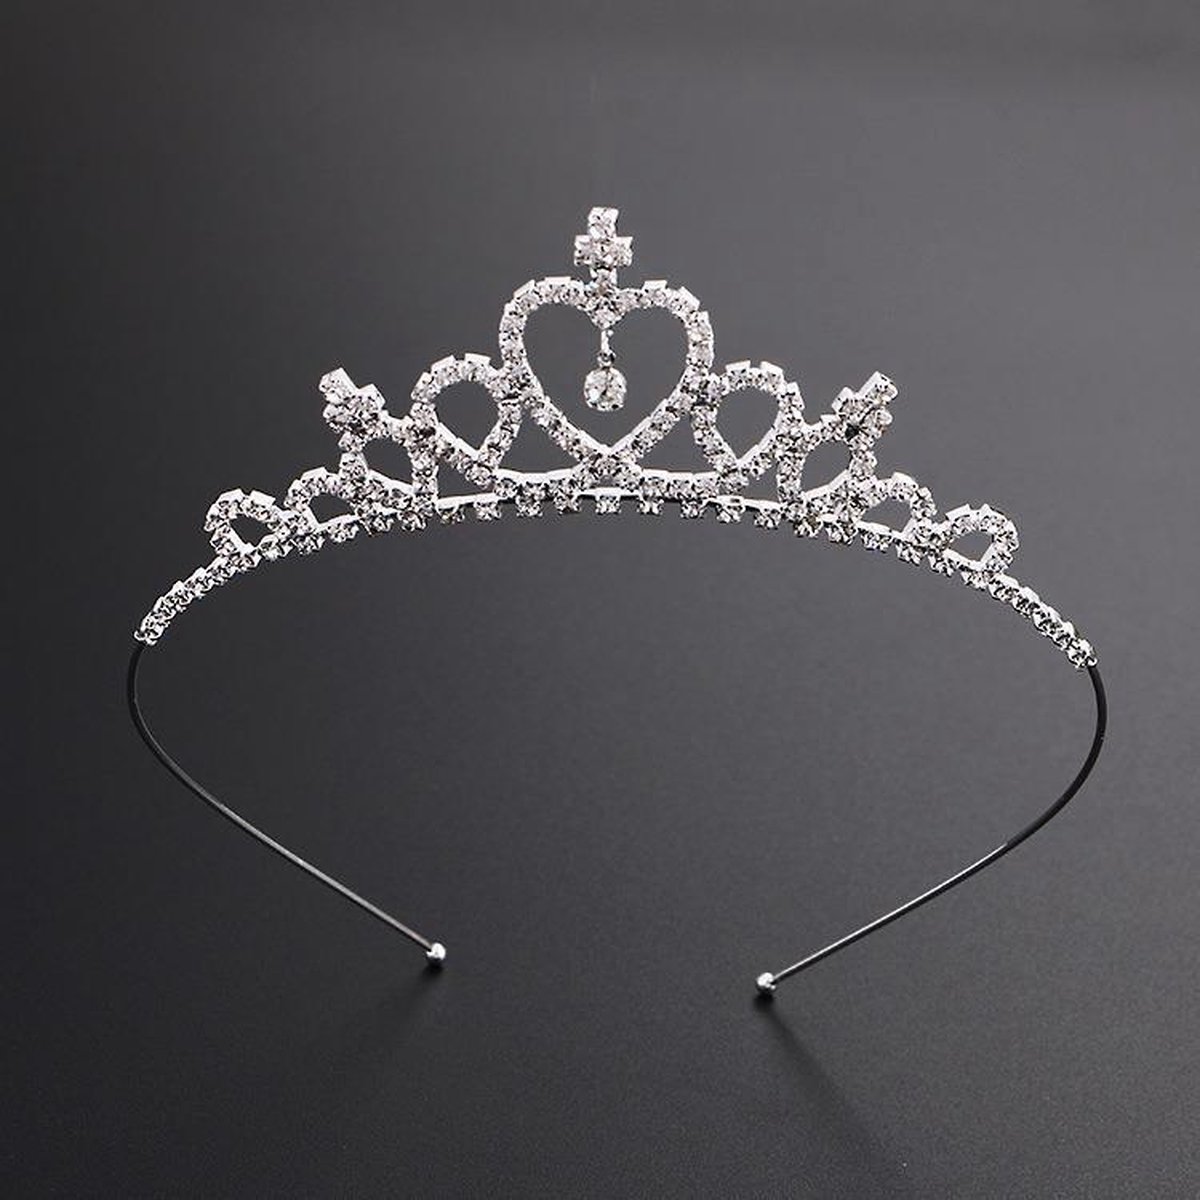 onaangenaam Geaccepteerd Bevoorrecht MINIIYOU - Tiara Prinses - Diadeem - kroon meisje kind vanaf 3 jaar |  bol.com